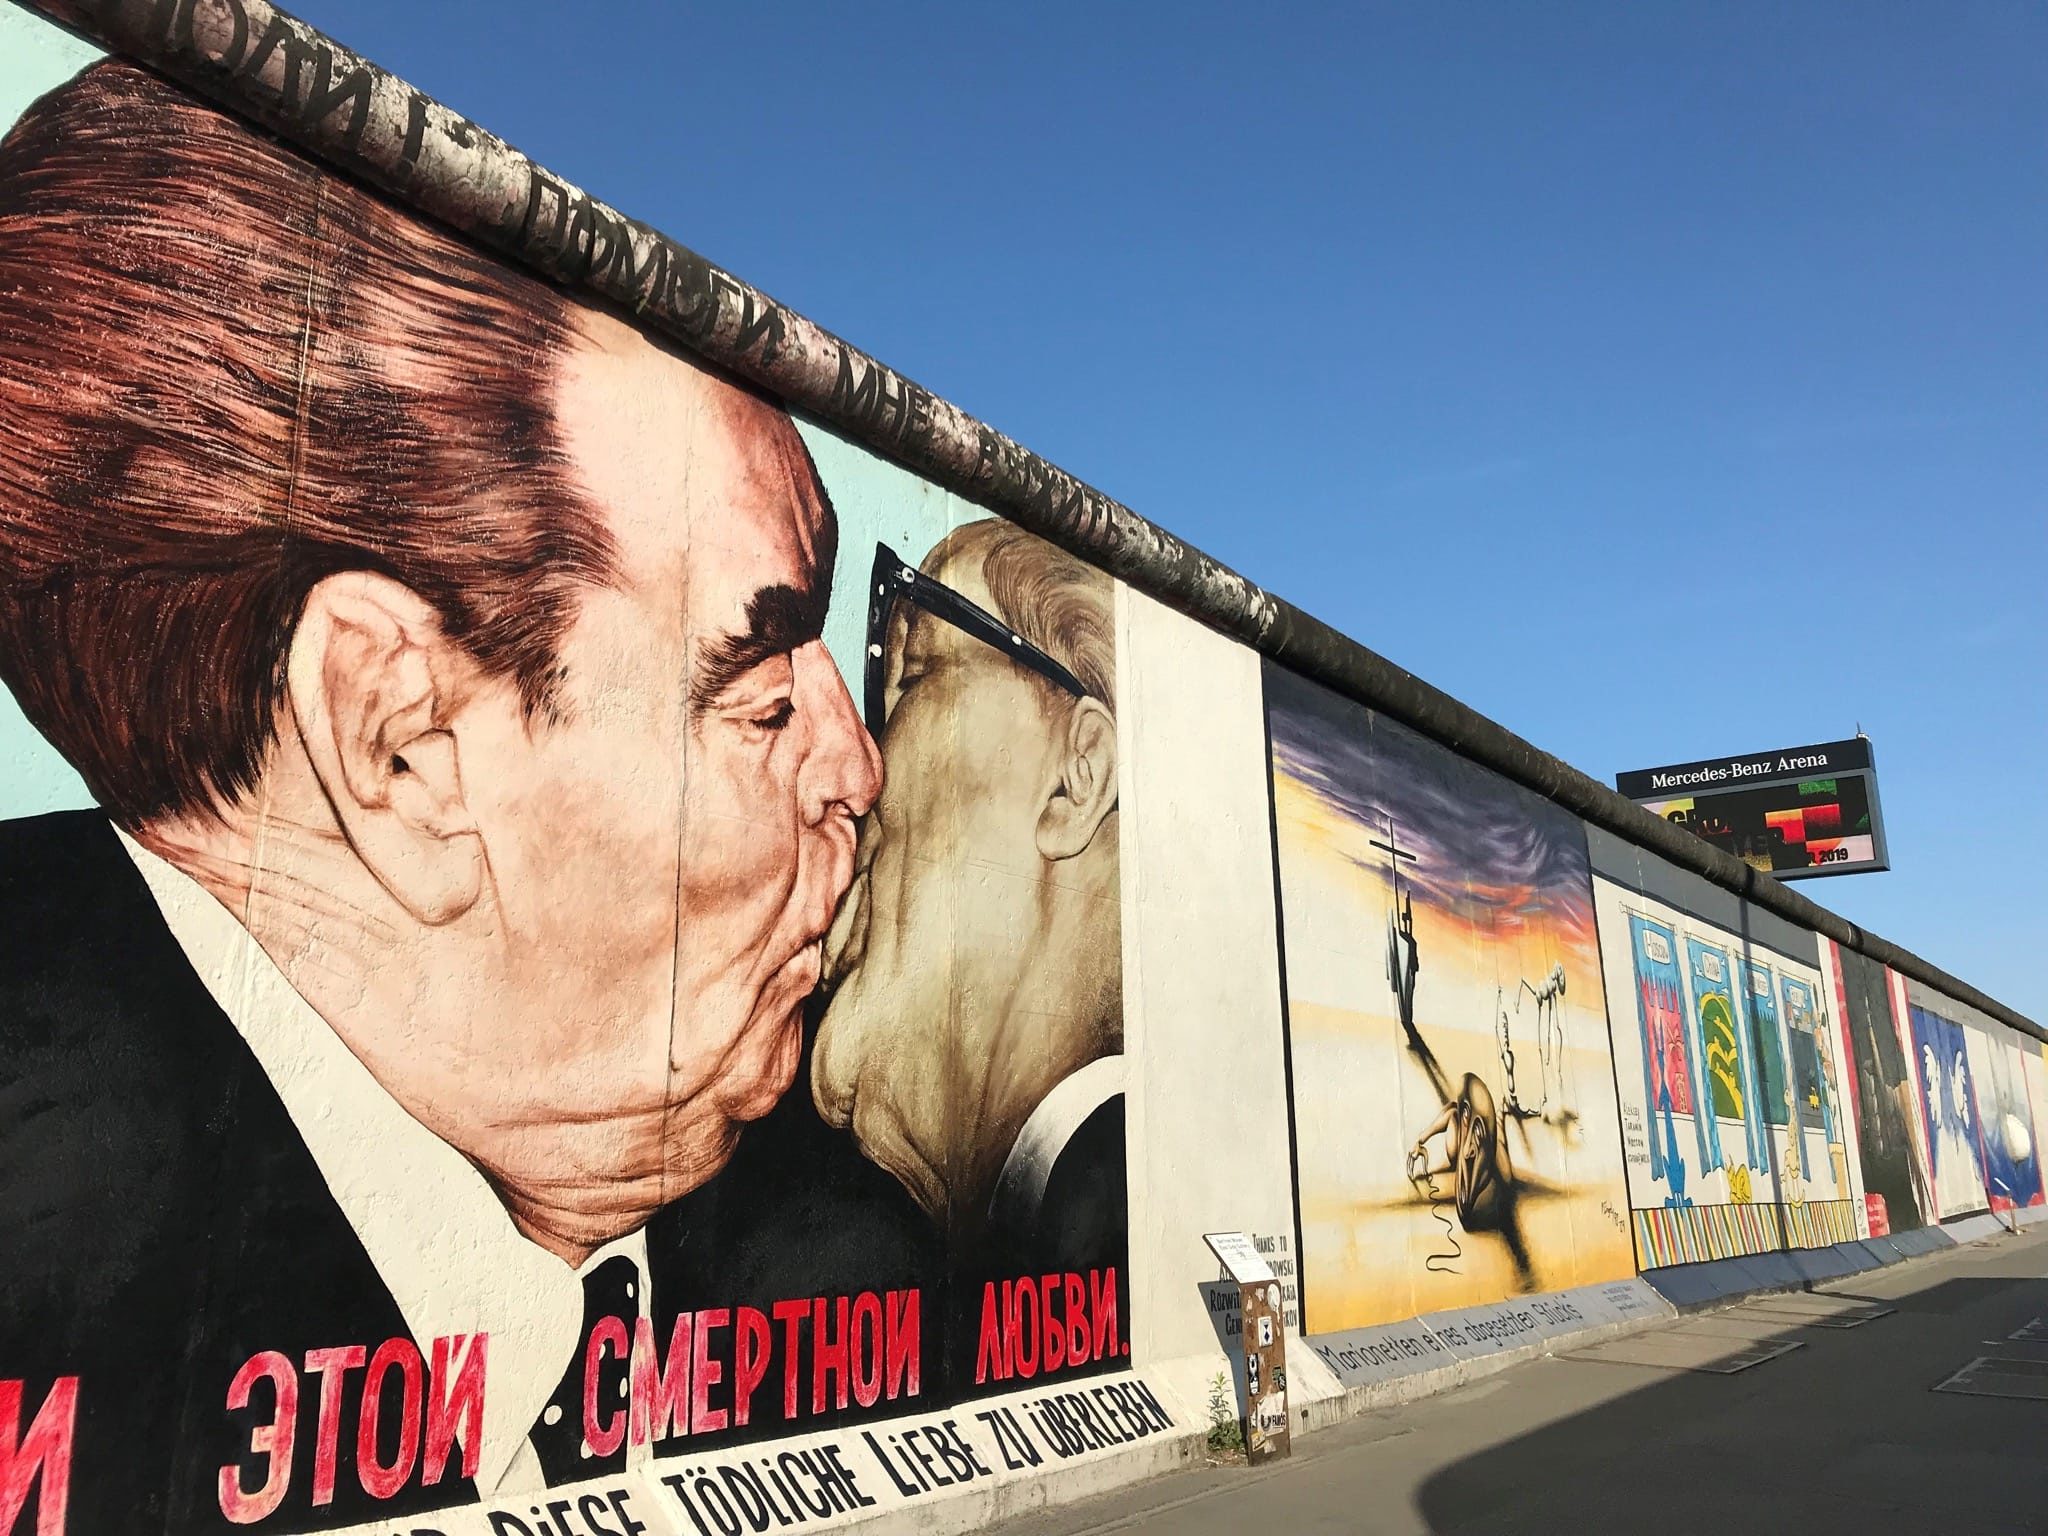 "Derrière les murs - Berlin" de Matthias Schmidt et Kai Christiansen image documentaire